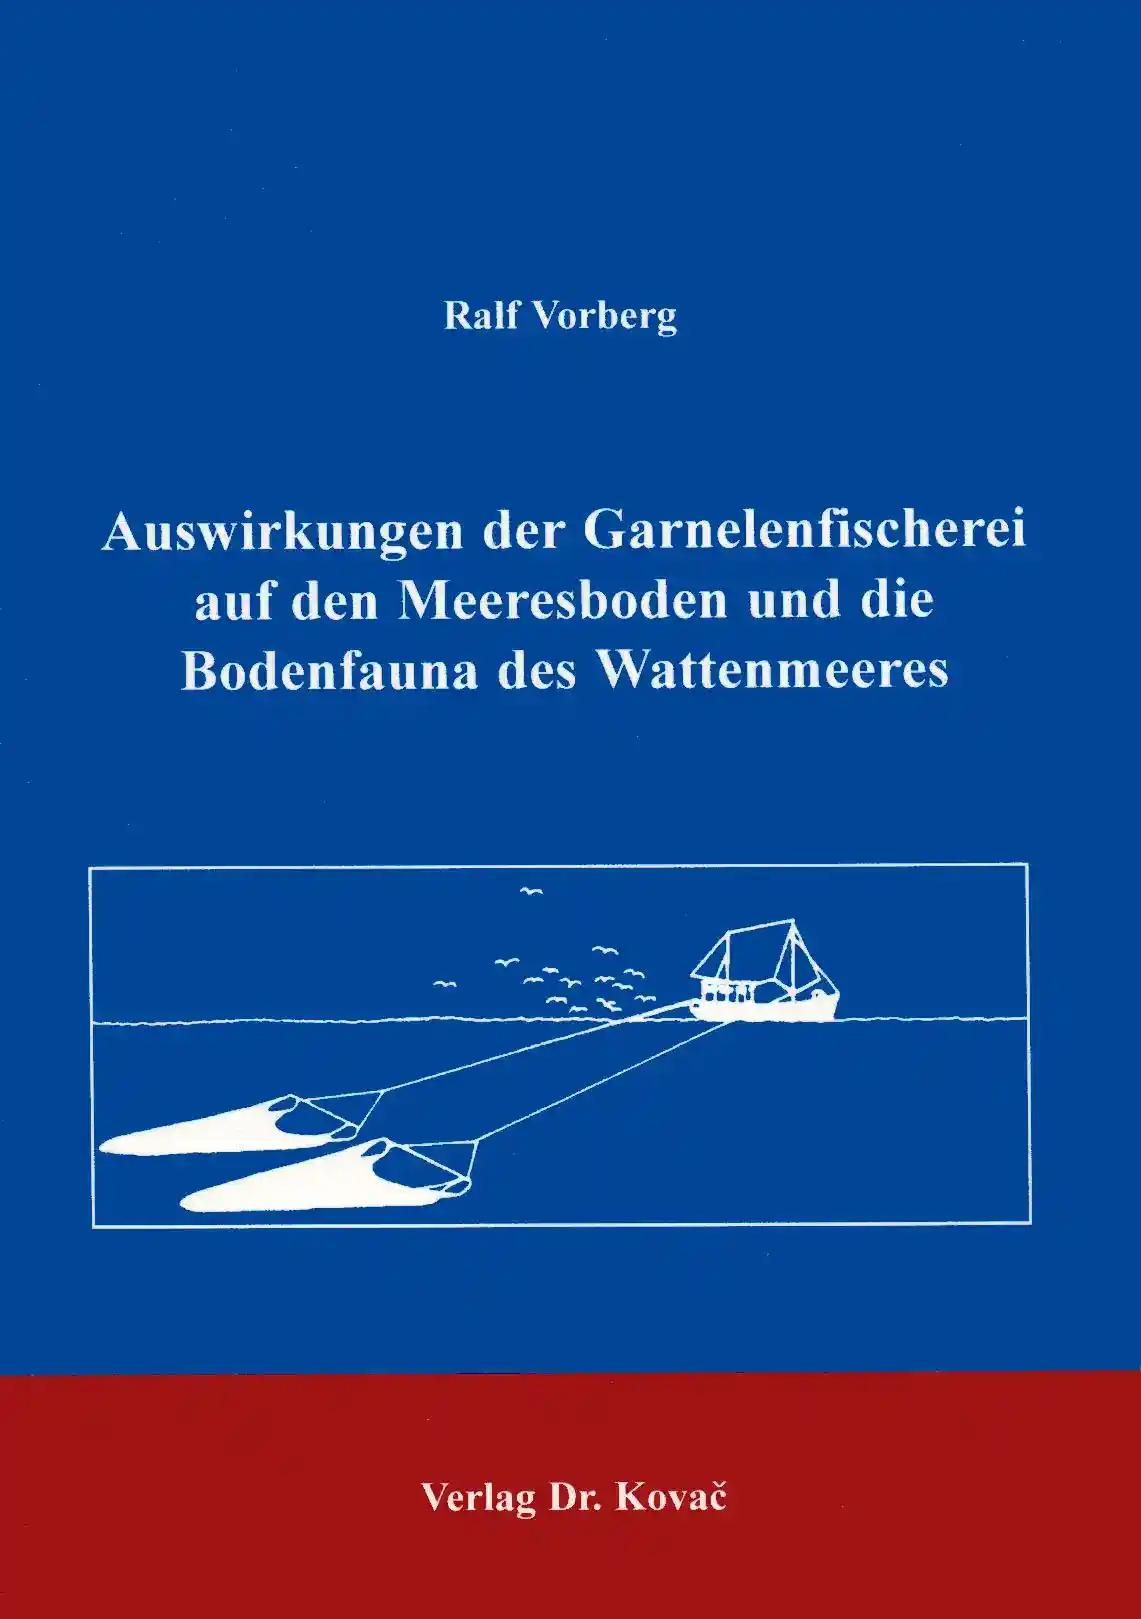 Auswirkungen der Garnelenfischerei auf den Meeresboden und Bodenfauna des Wattenmeeres, - Ralf Vorberg